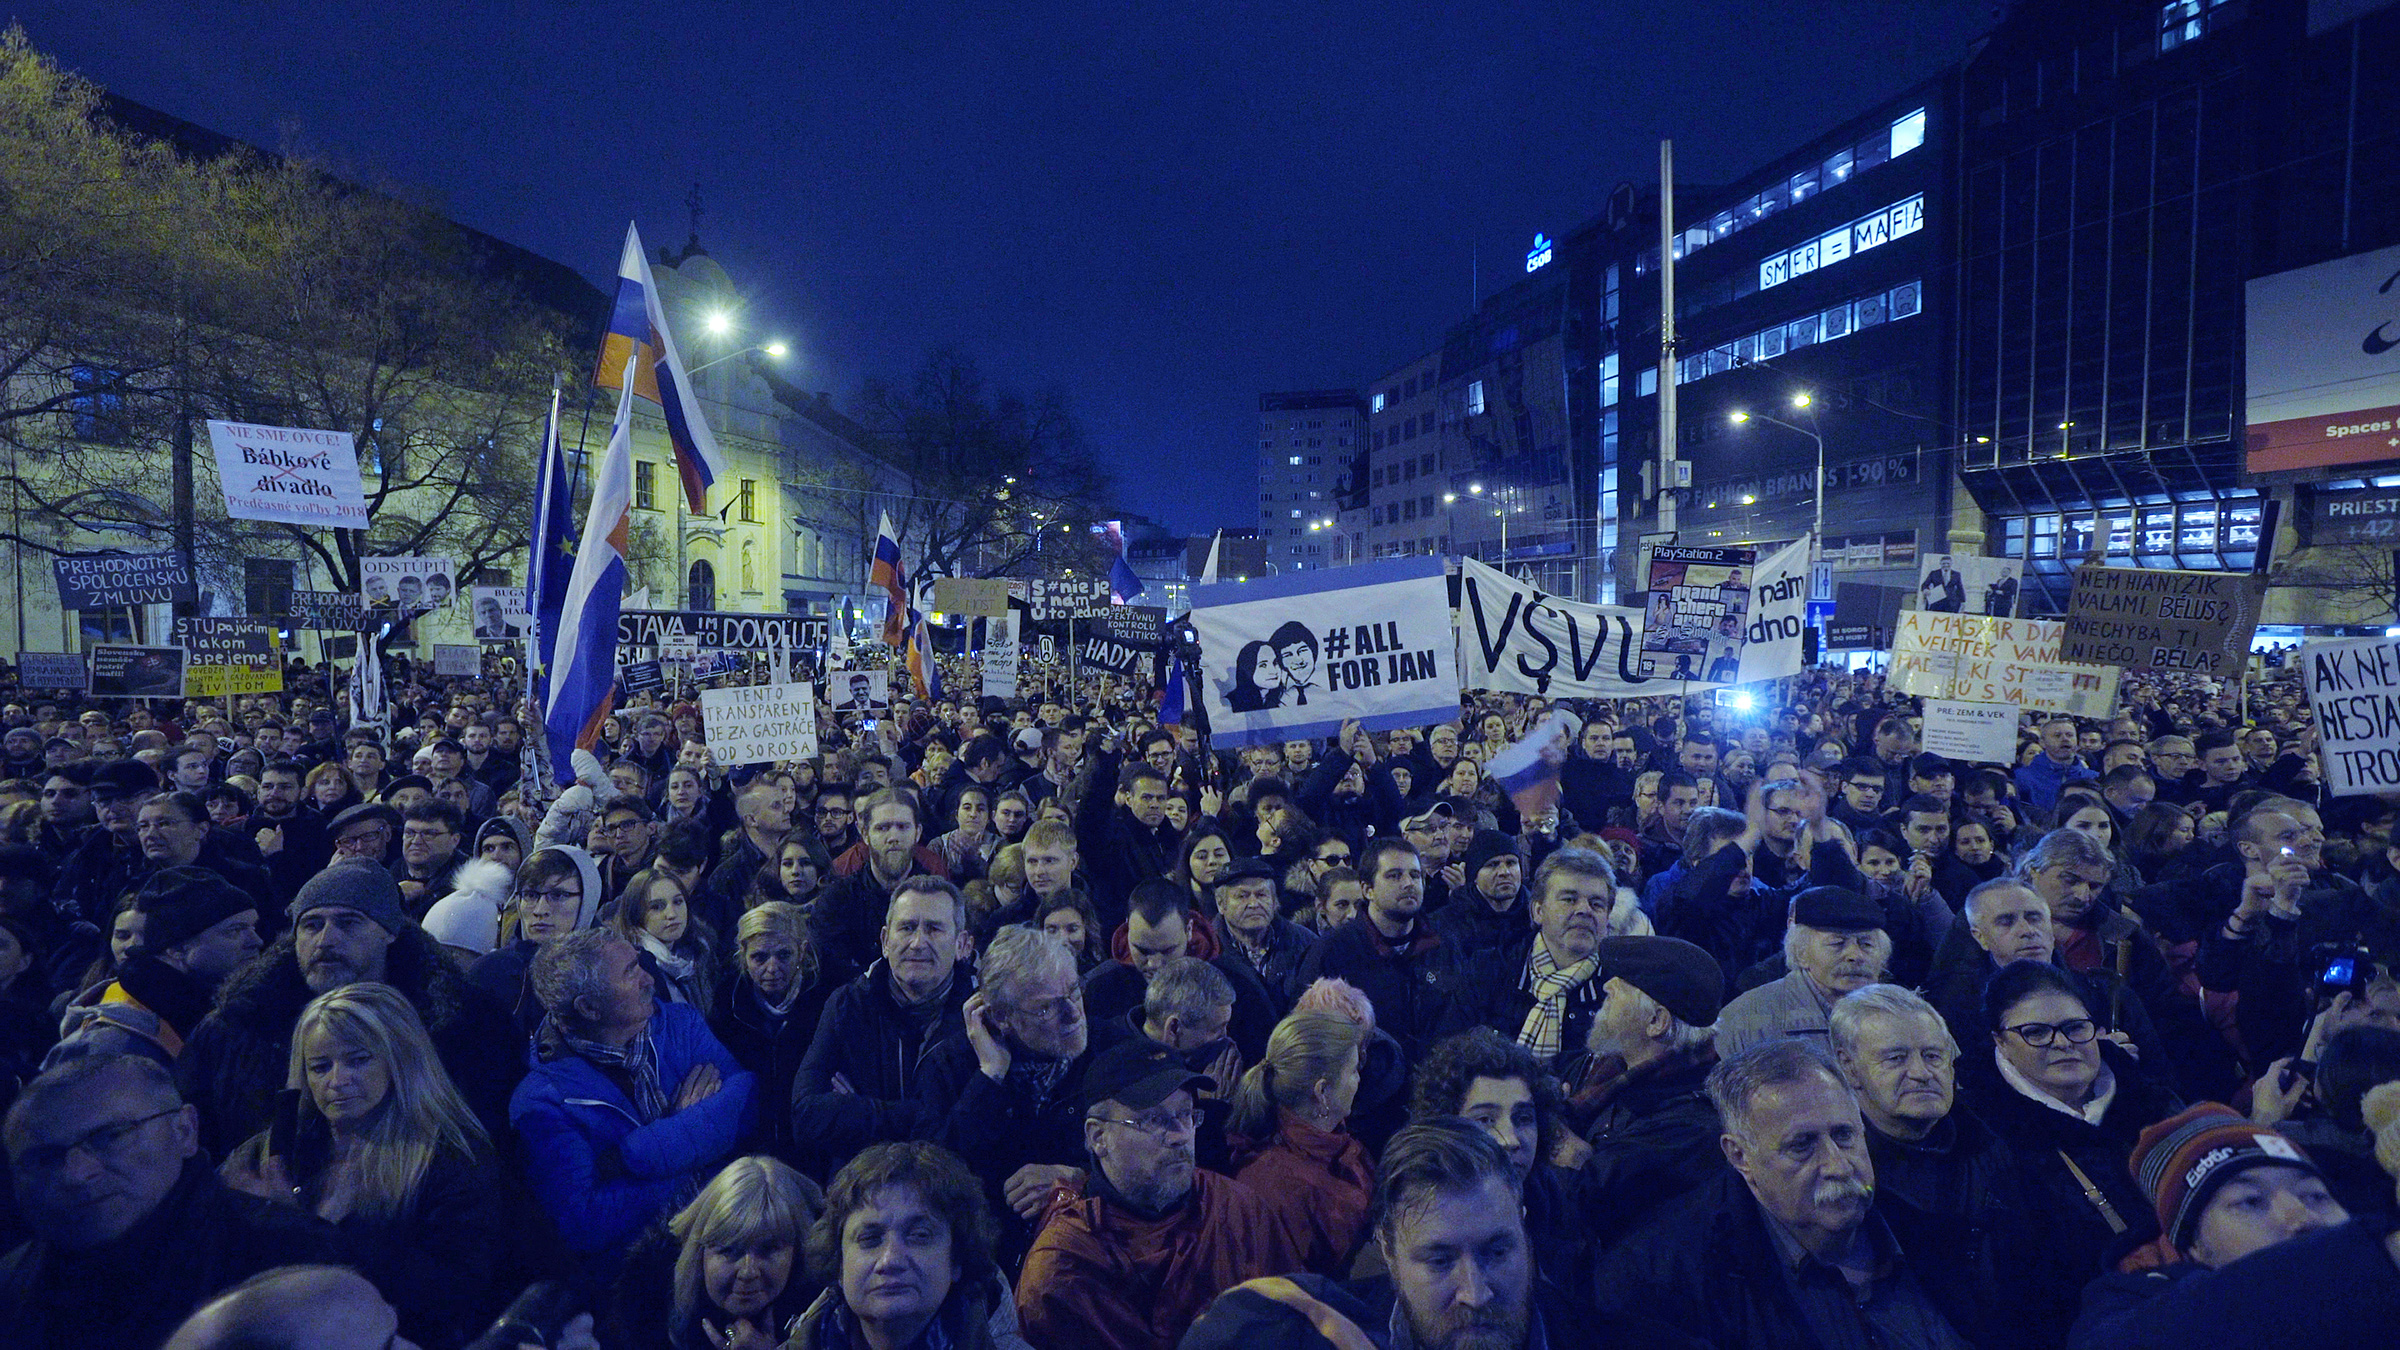 Bratislavský protest proti mafiánským praktikám vrcholících vraždou novináře Jána Kuciaka a jeho partnerky